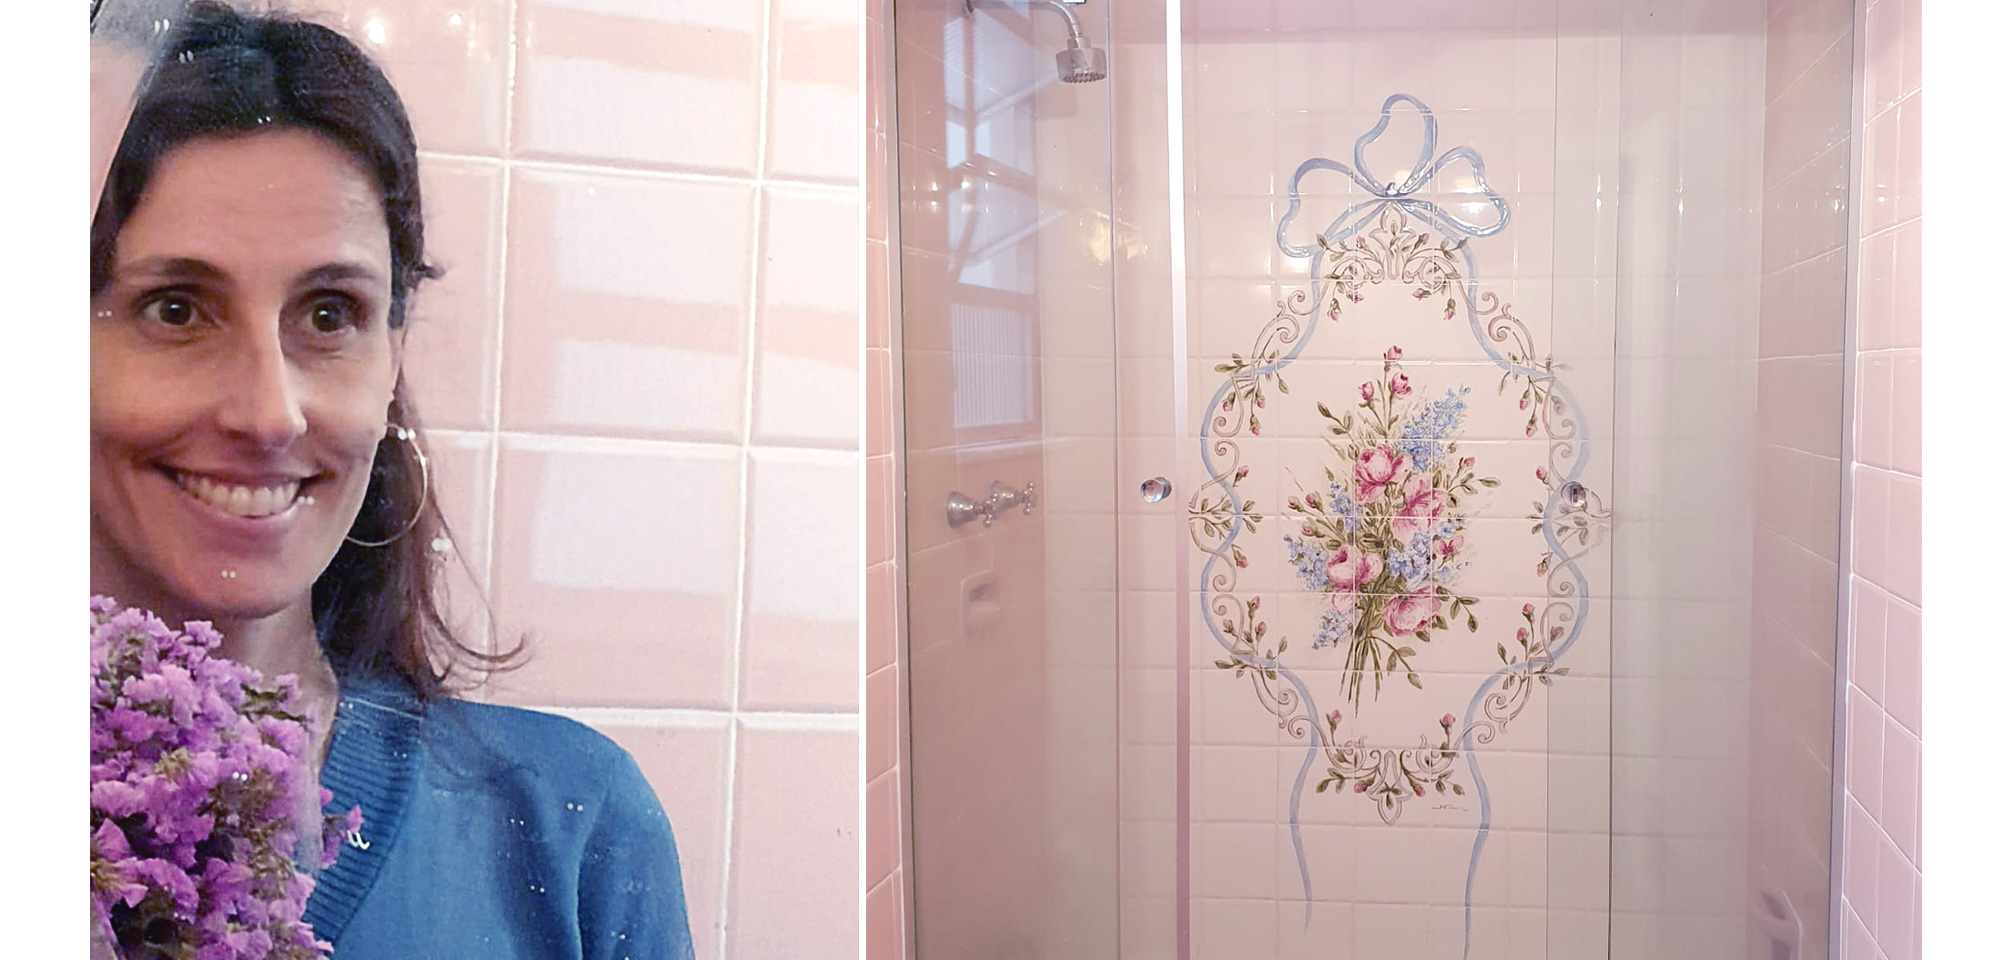 Gabriela Altaf e o banheiro decorado de sua avó